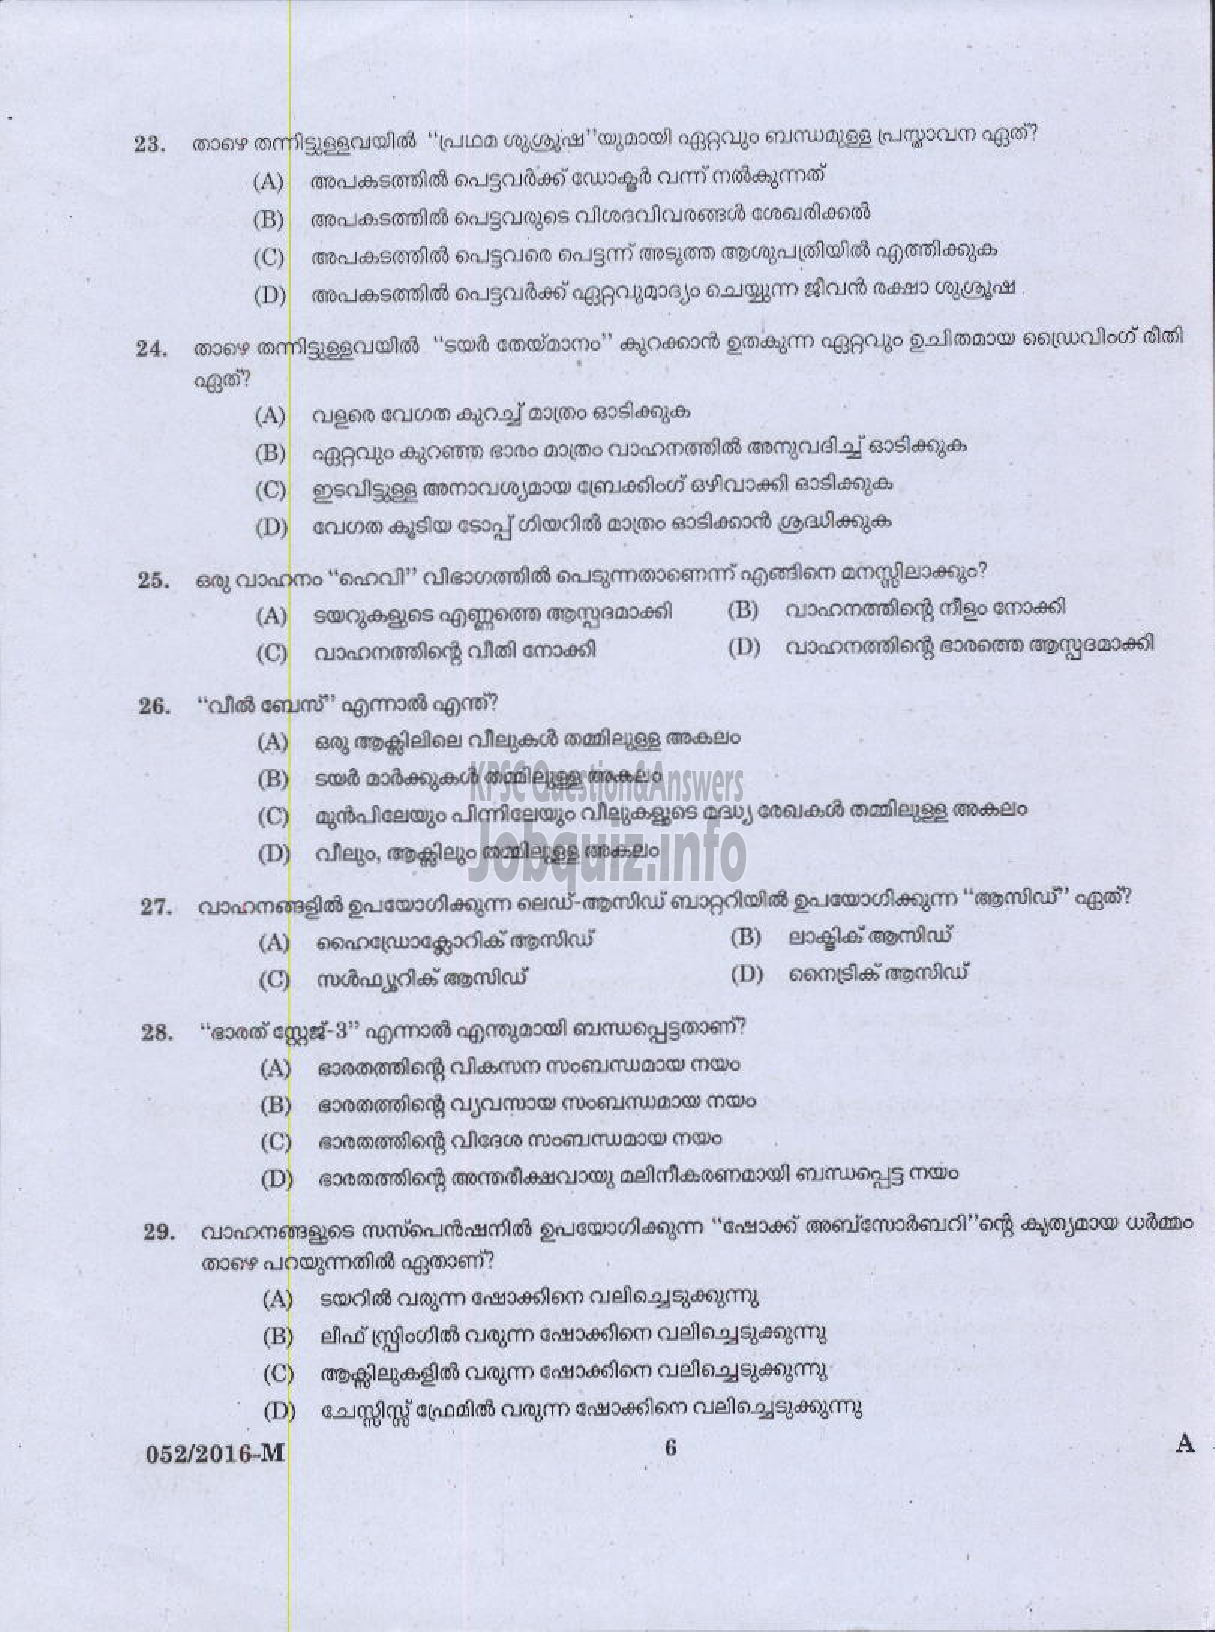 Kerala PSC Question Paper - DRIVER GRADE II HDV VARIOUS-4